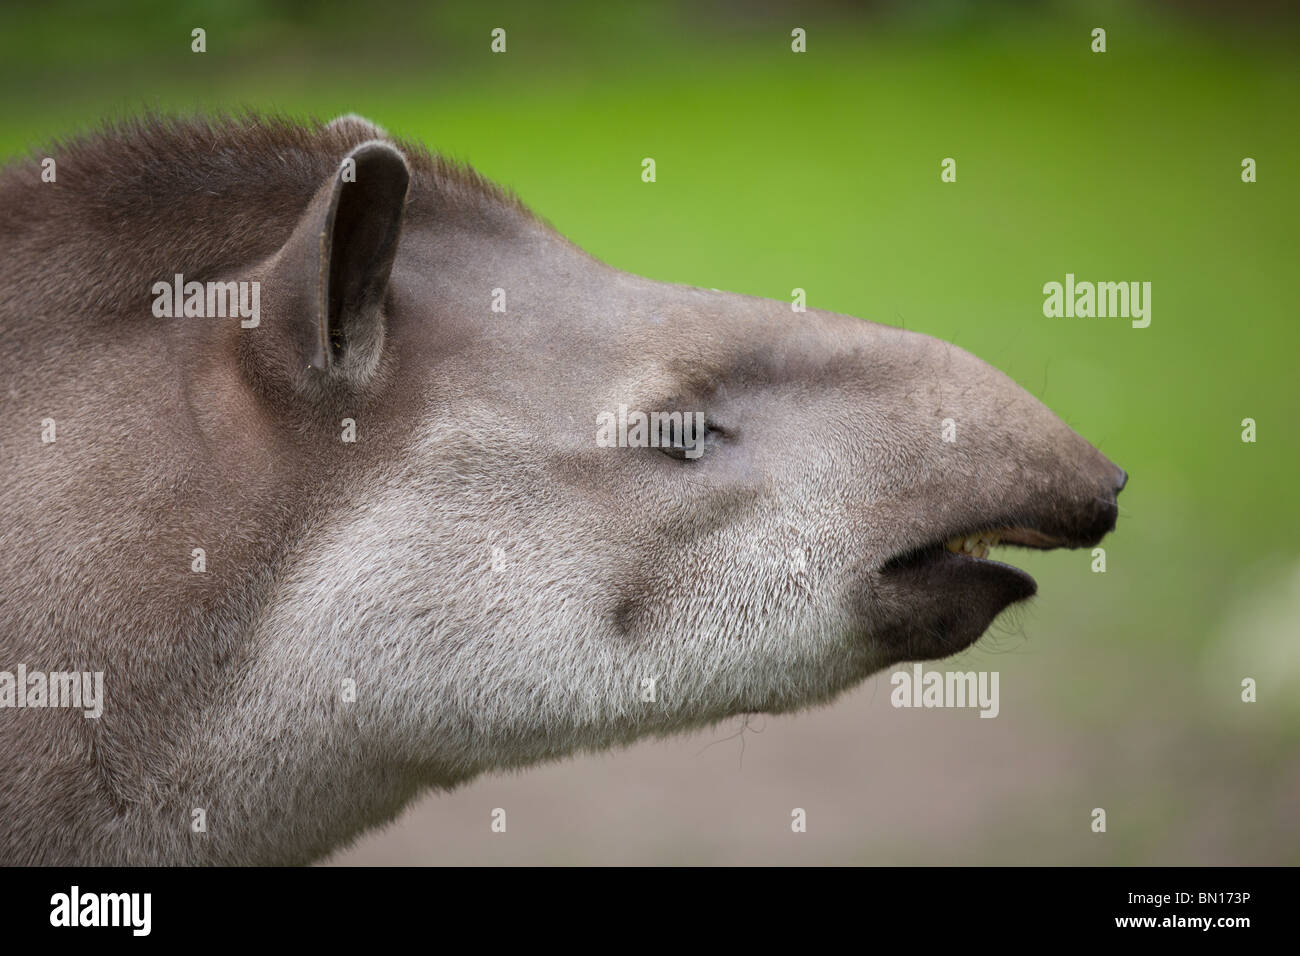 Lowland Tapir showing flehmen response - Tapirus terrestris Stock Photo